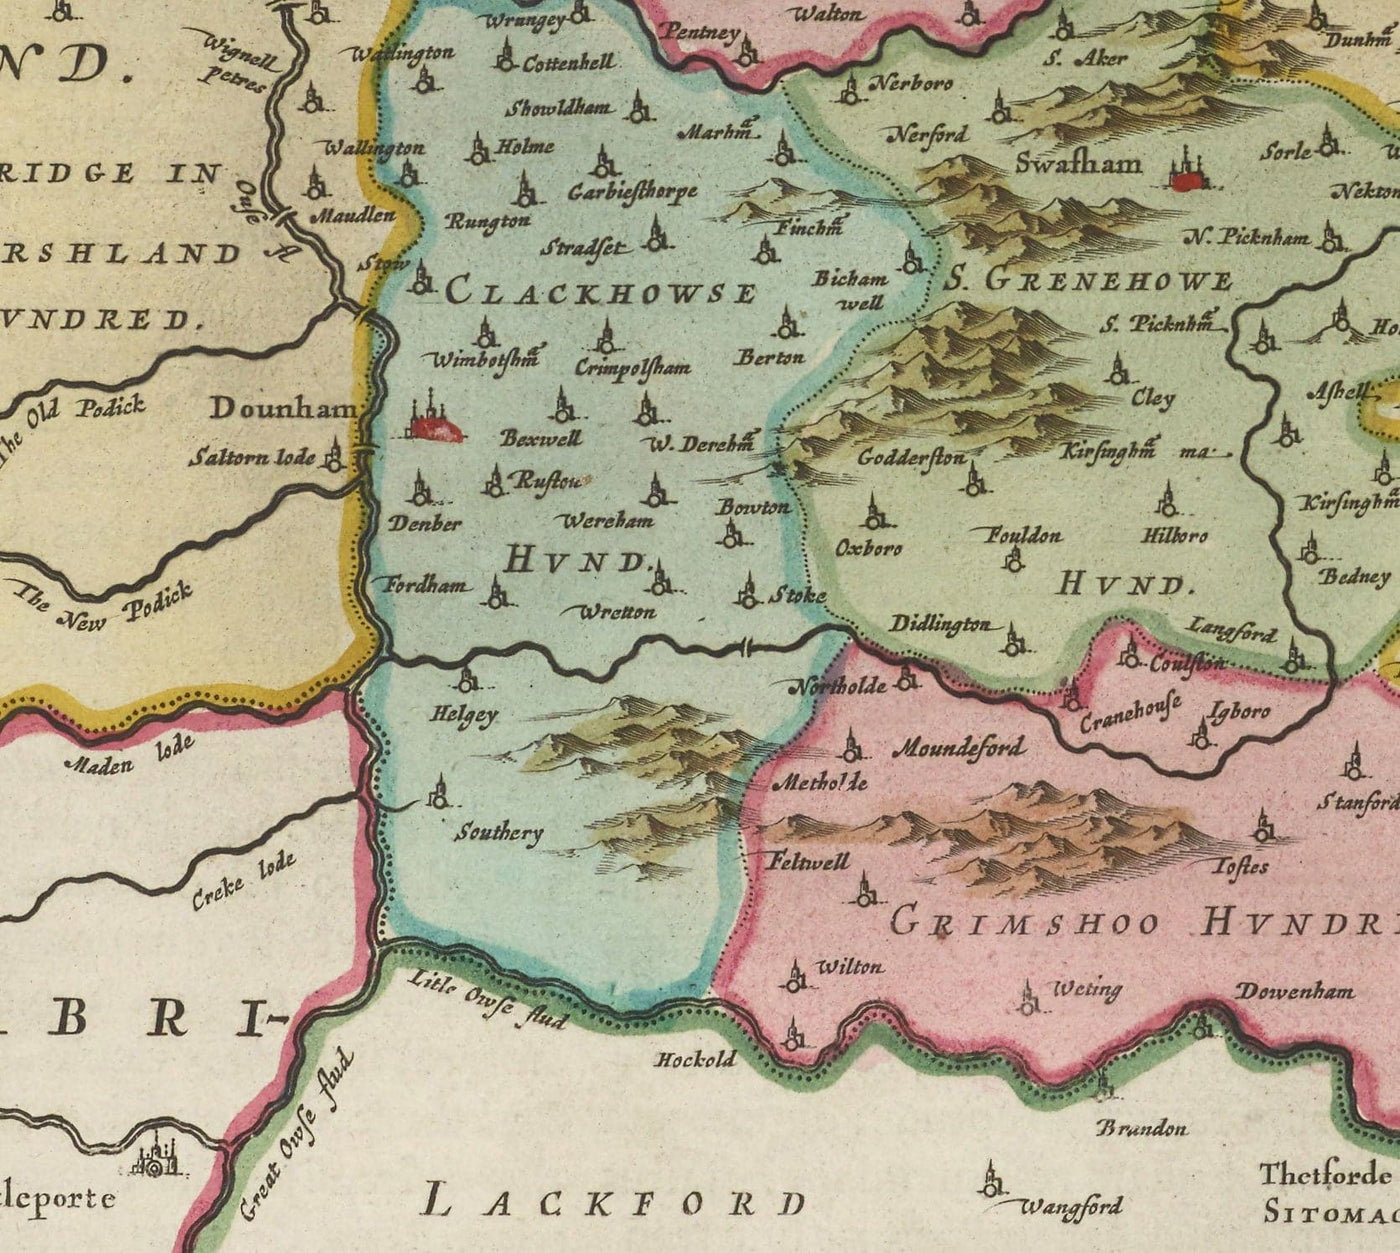 Alte Karte von Norfolk im Jahre 1665 von Joan Blaeu - Norwich, Tolles Yarmouth, King's Lynn, Thetford, Swaffham, Fakenham, East Anglia